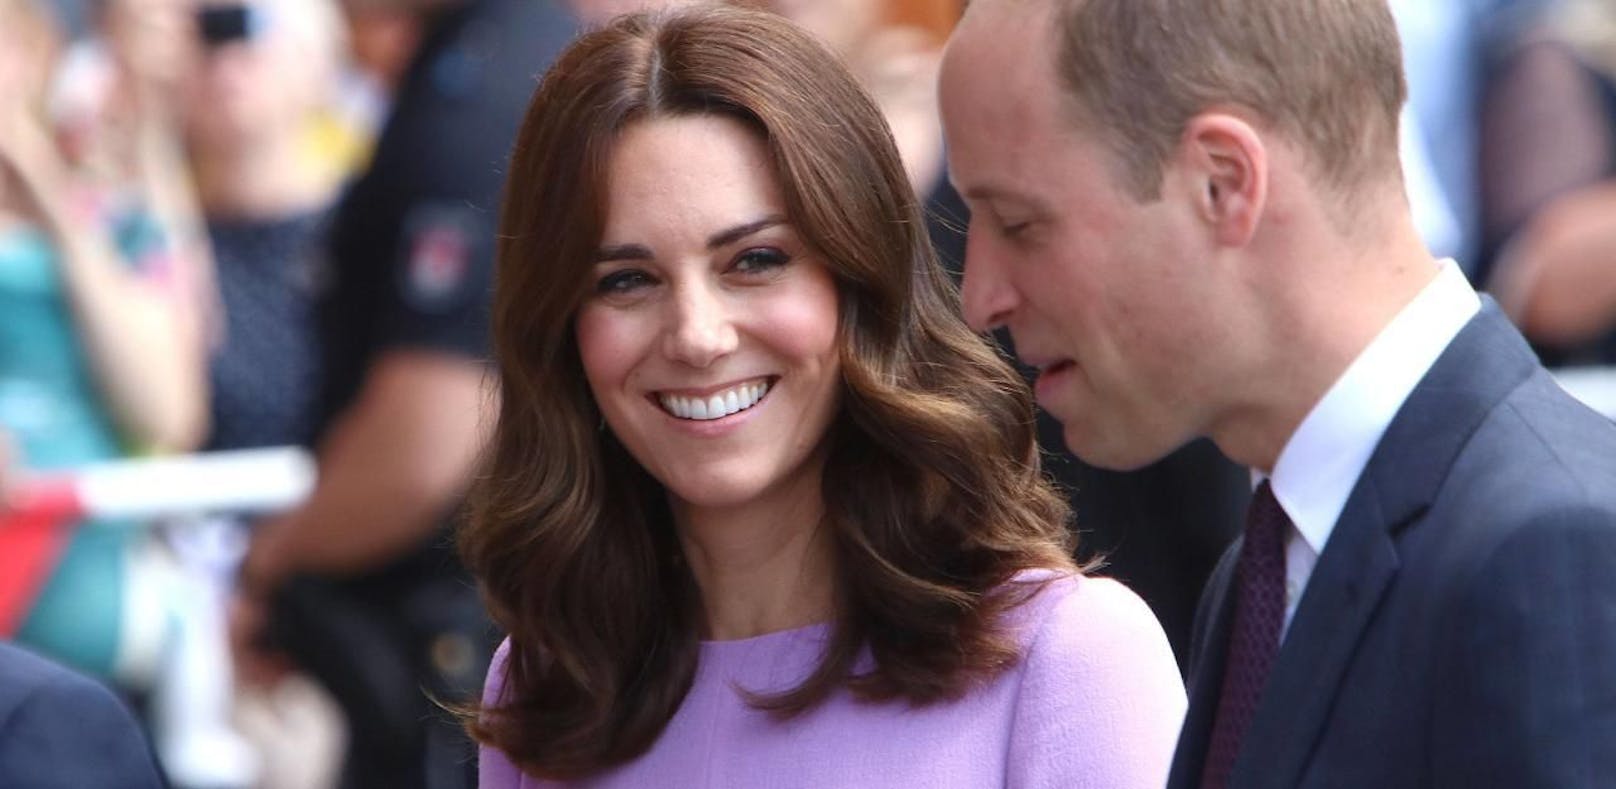 Herzogin Kate ließ Haare für krebskranke Kinder